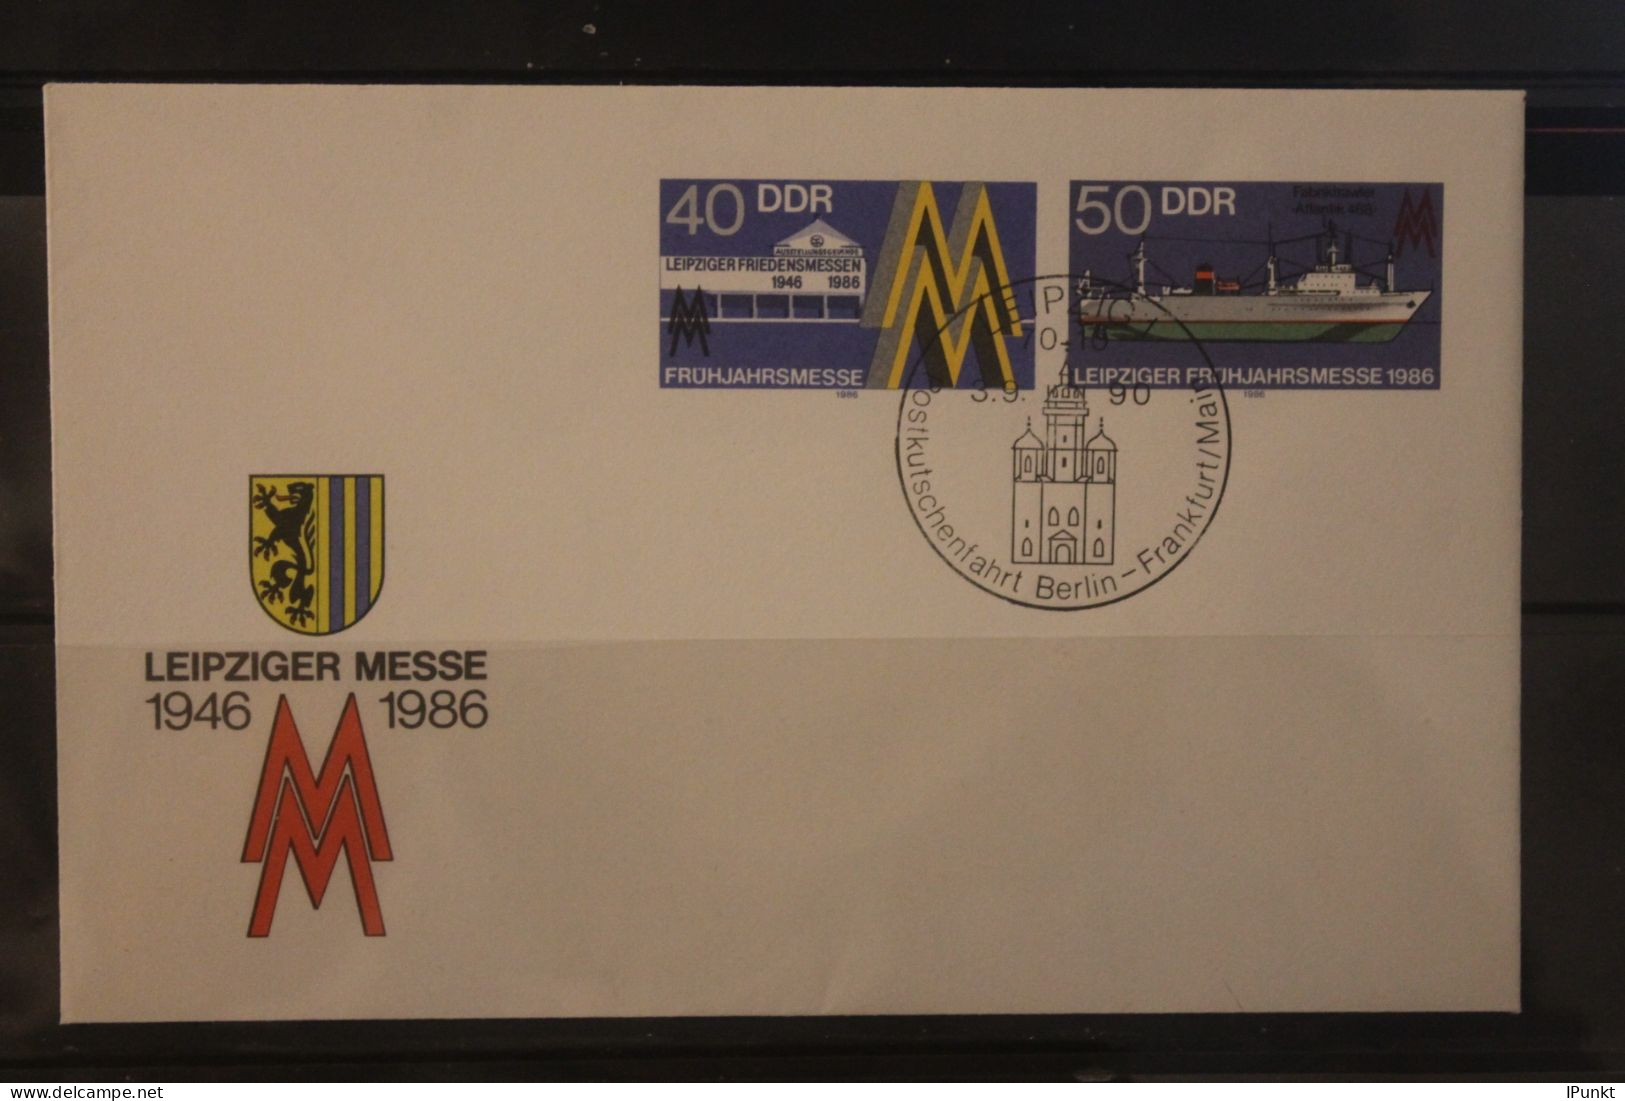 DDR 1986; Leipziger Messe 1986, U 4; SST Leipzig 1990 Postkutschenfahrt Berlin-Frankfurt/M. - Umschläge - Gebraucht